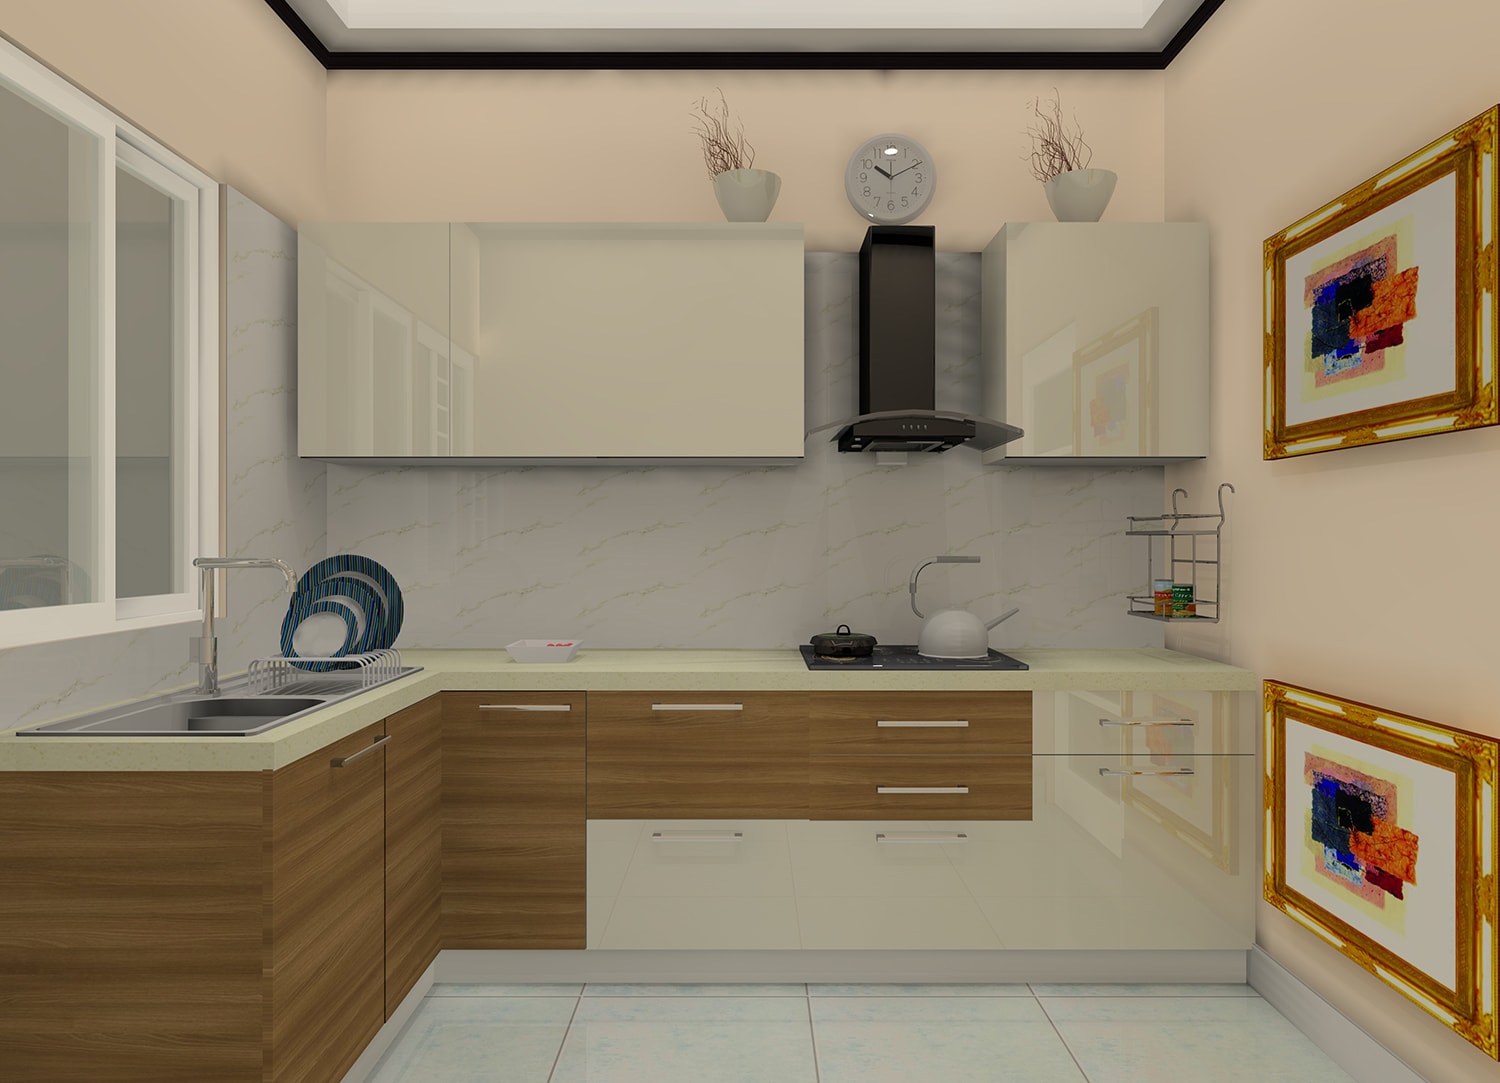  godrej kitchen design